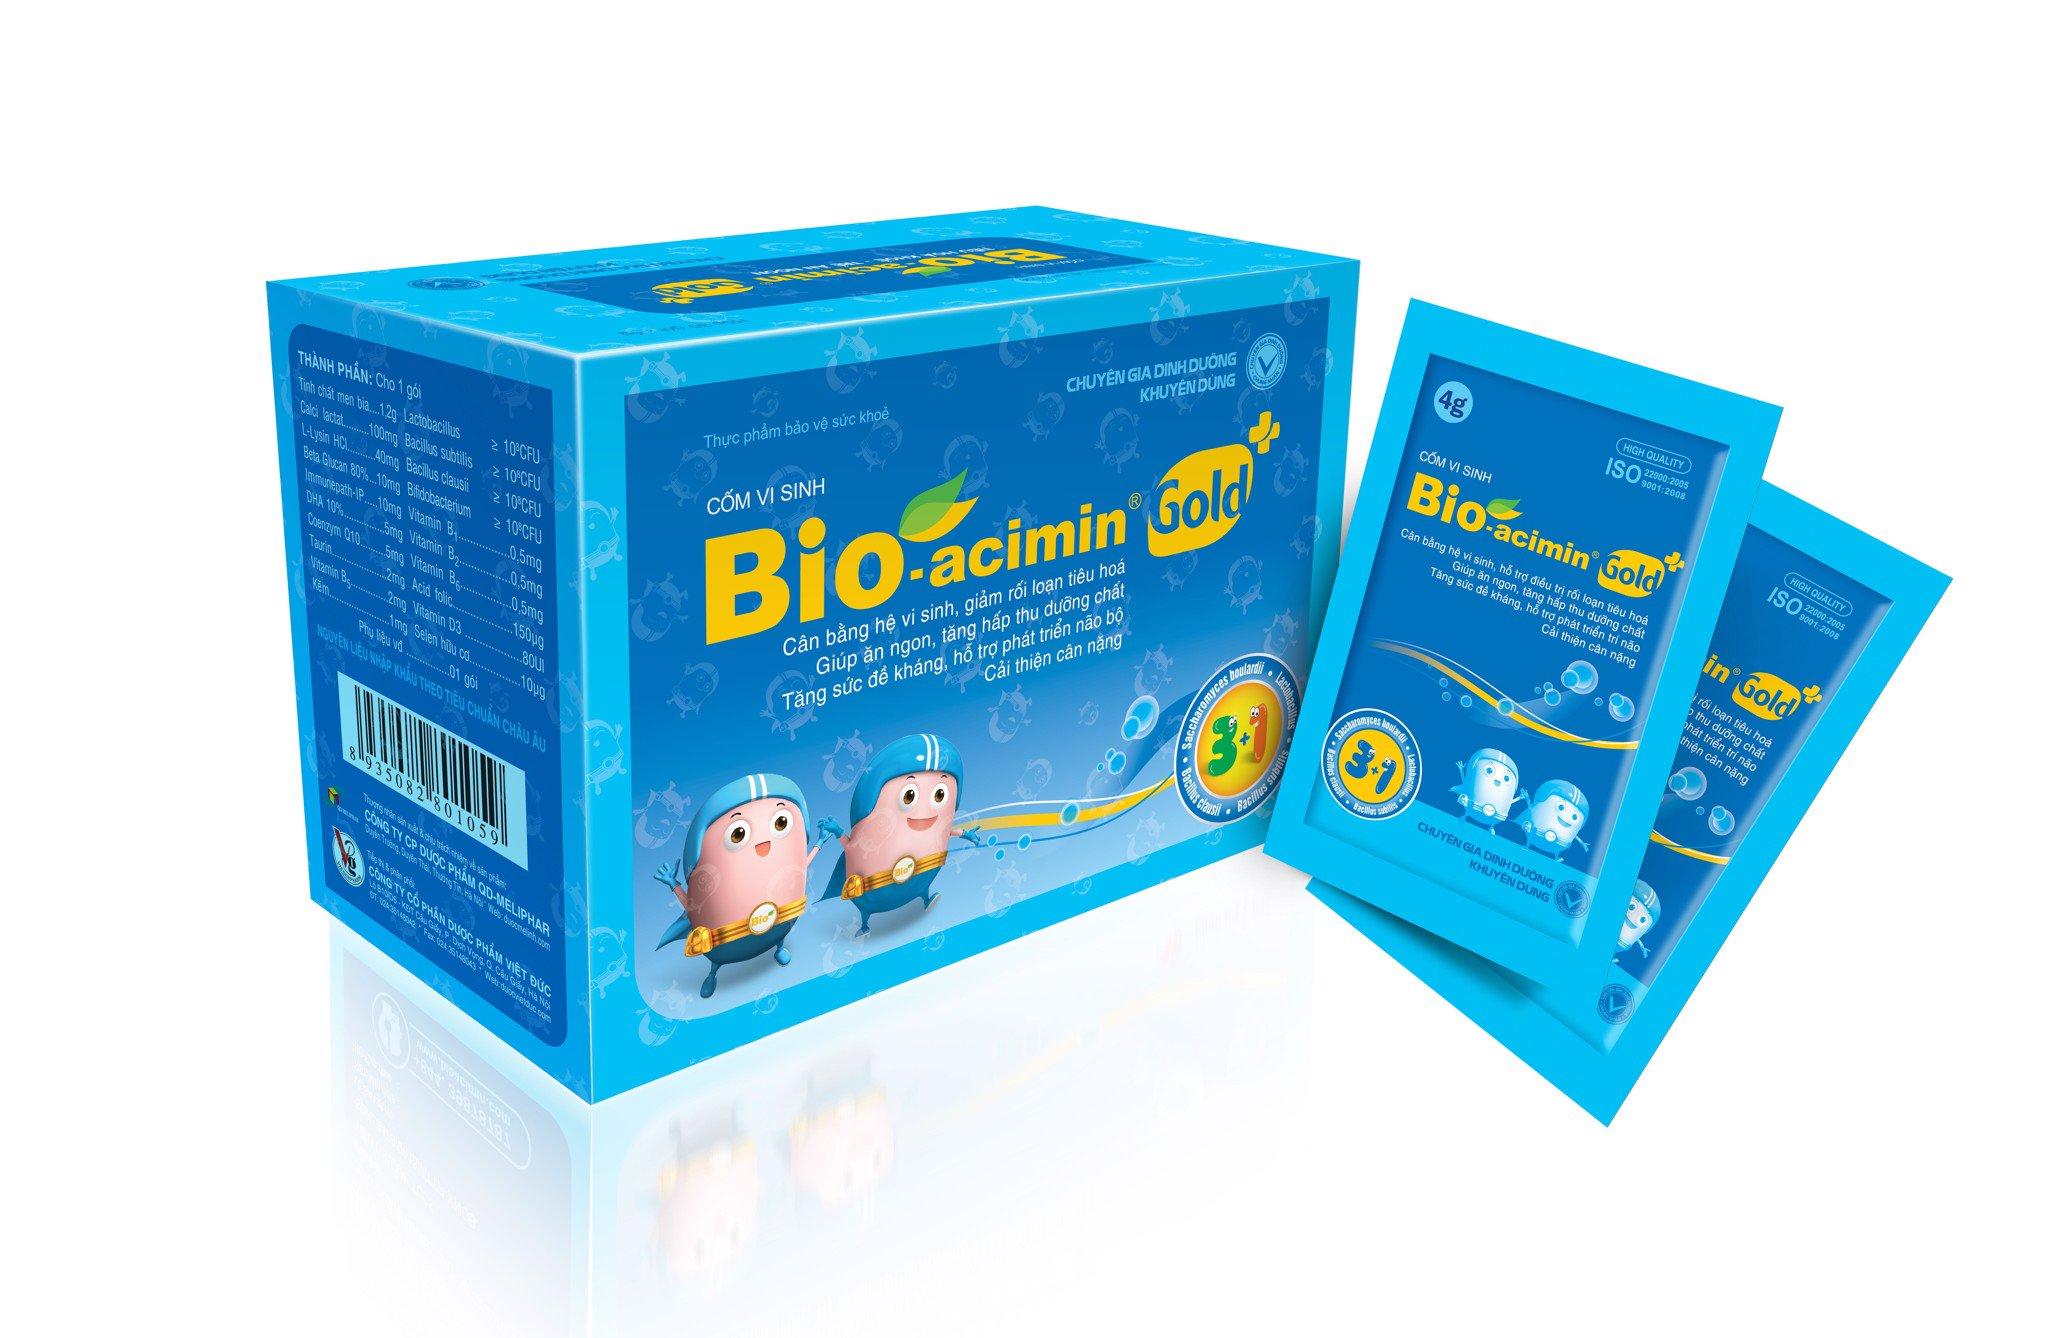 Bio-acimin dùng cho trẻ mấy tuổi